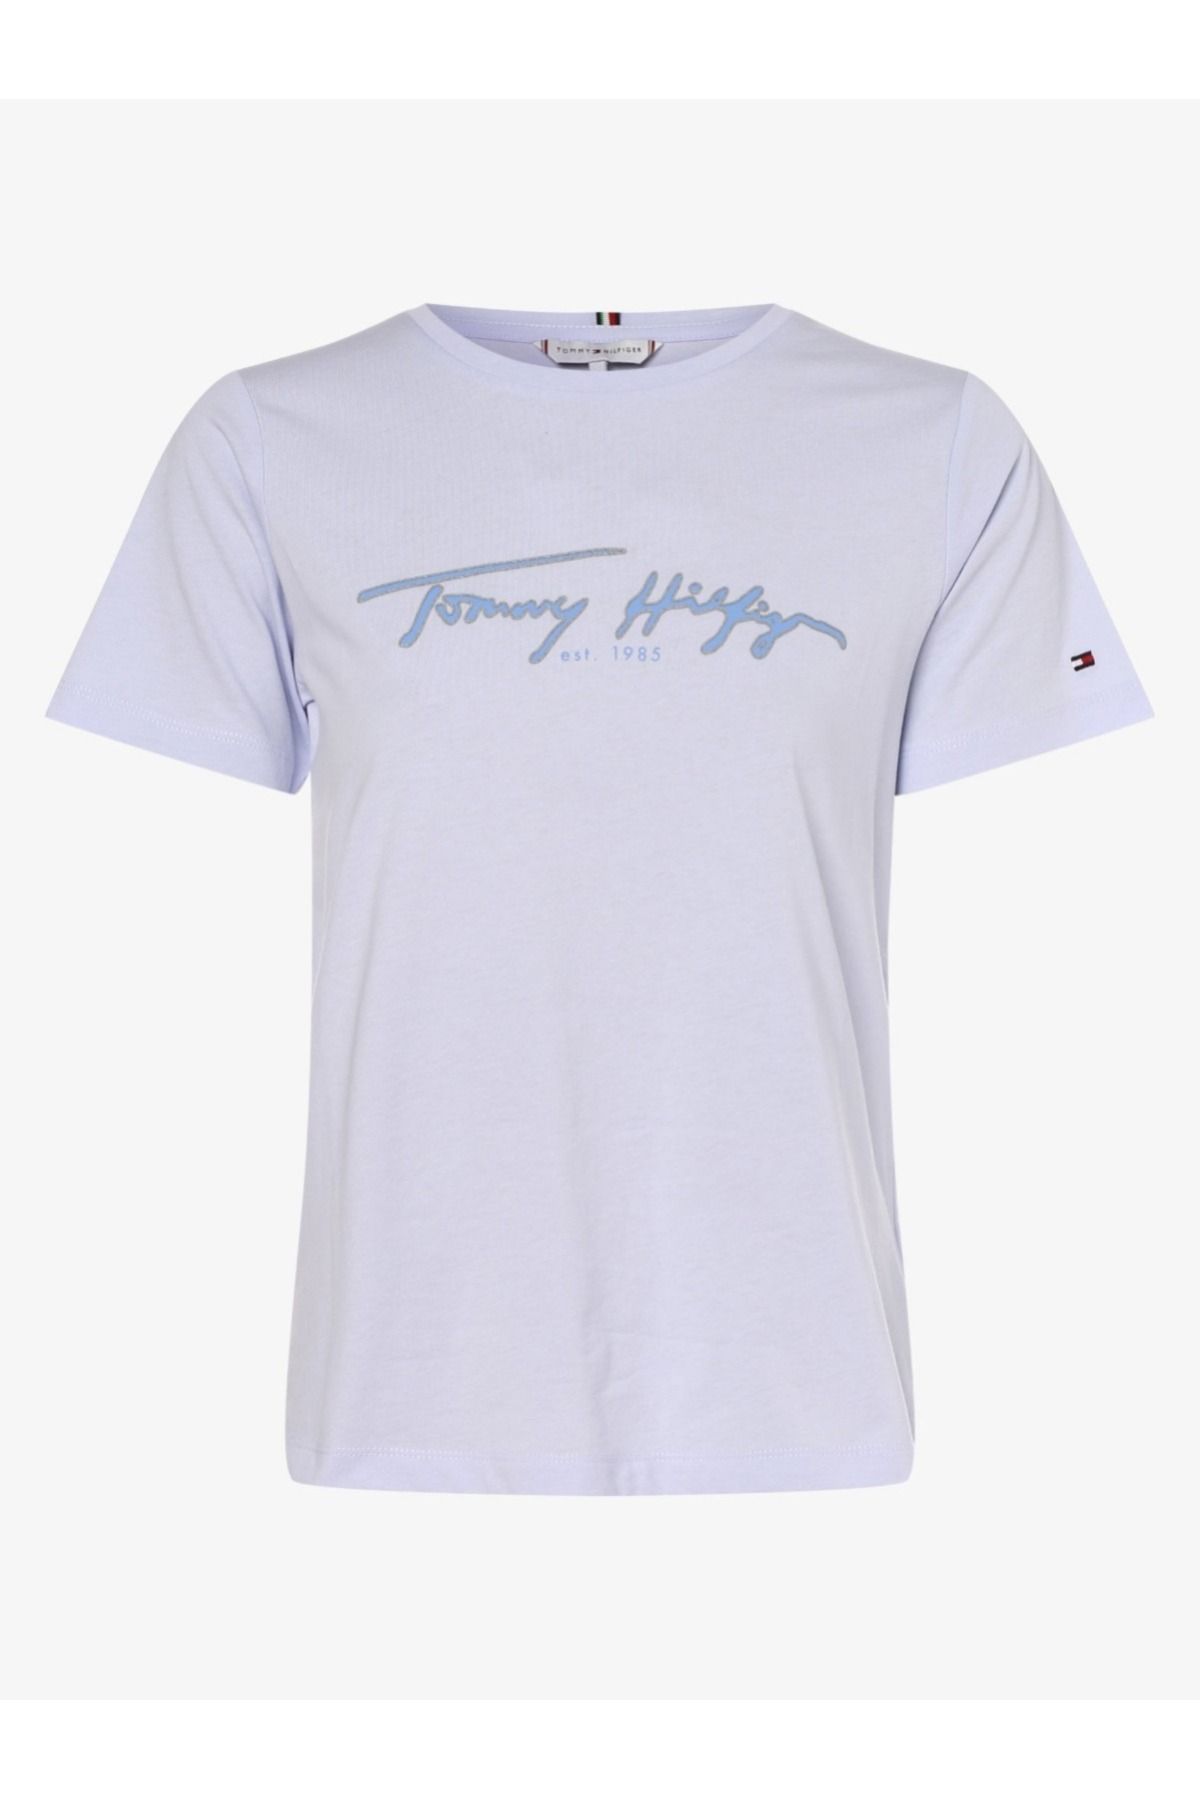 Tommy Hilfiger TOMMY HİLFİGER Cn Tee Logo White Regular